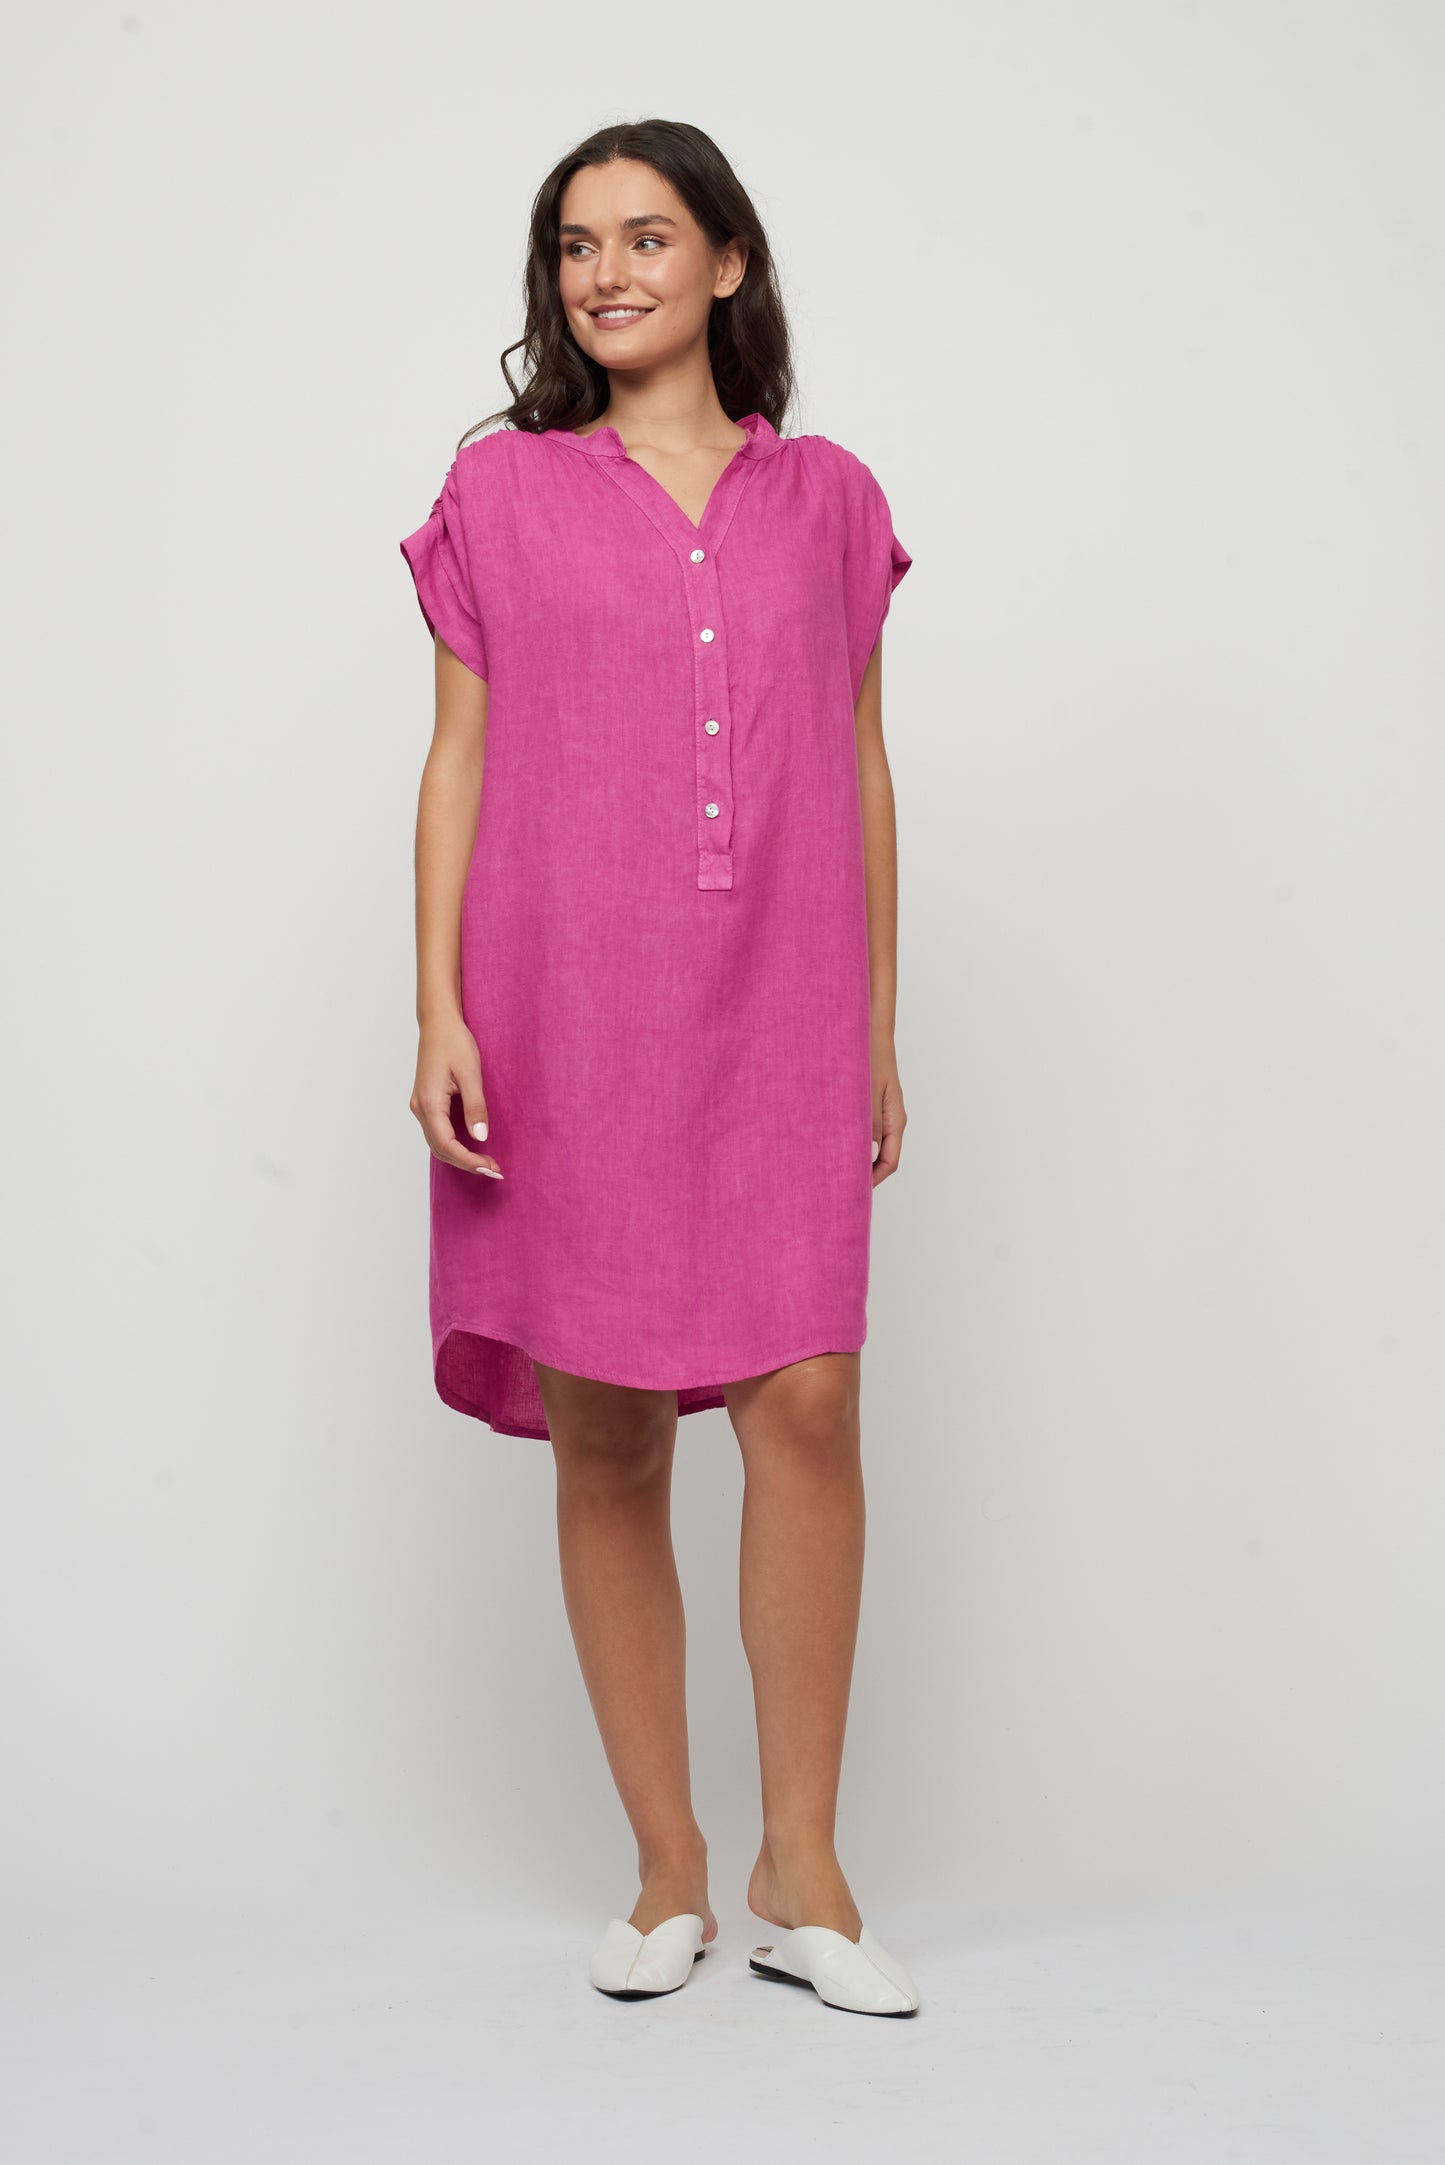 Pistache Pink V-Neck Button Front Dress